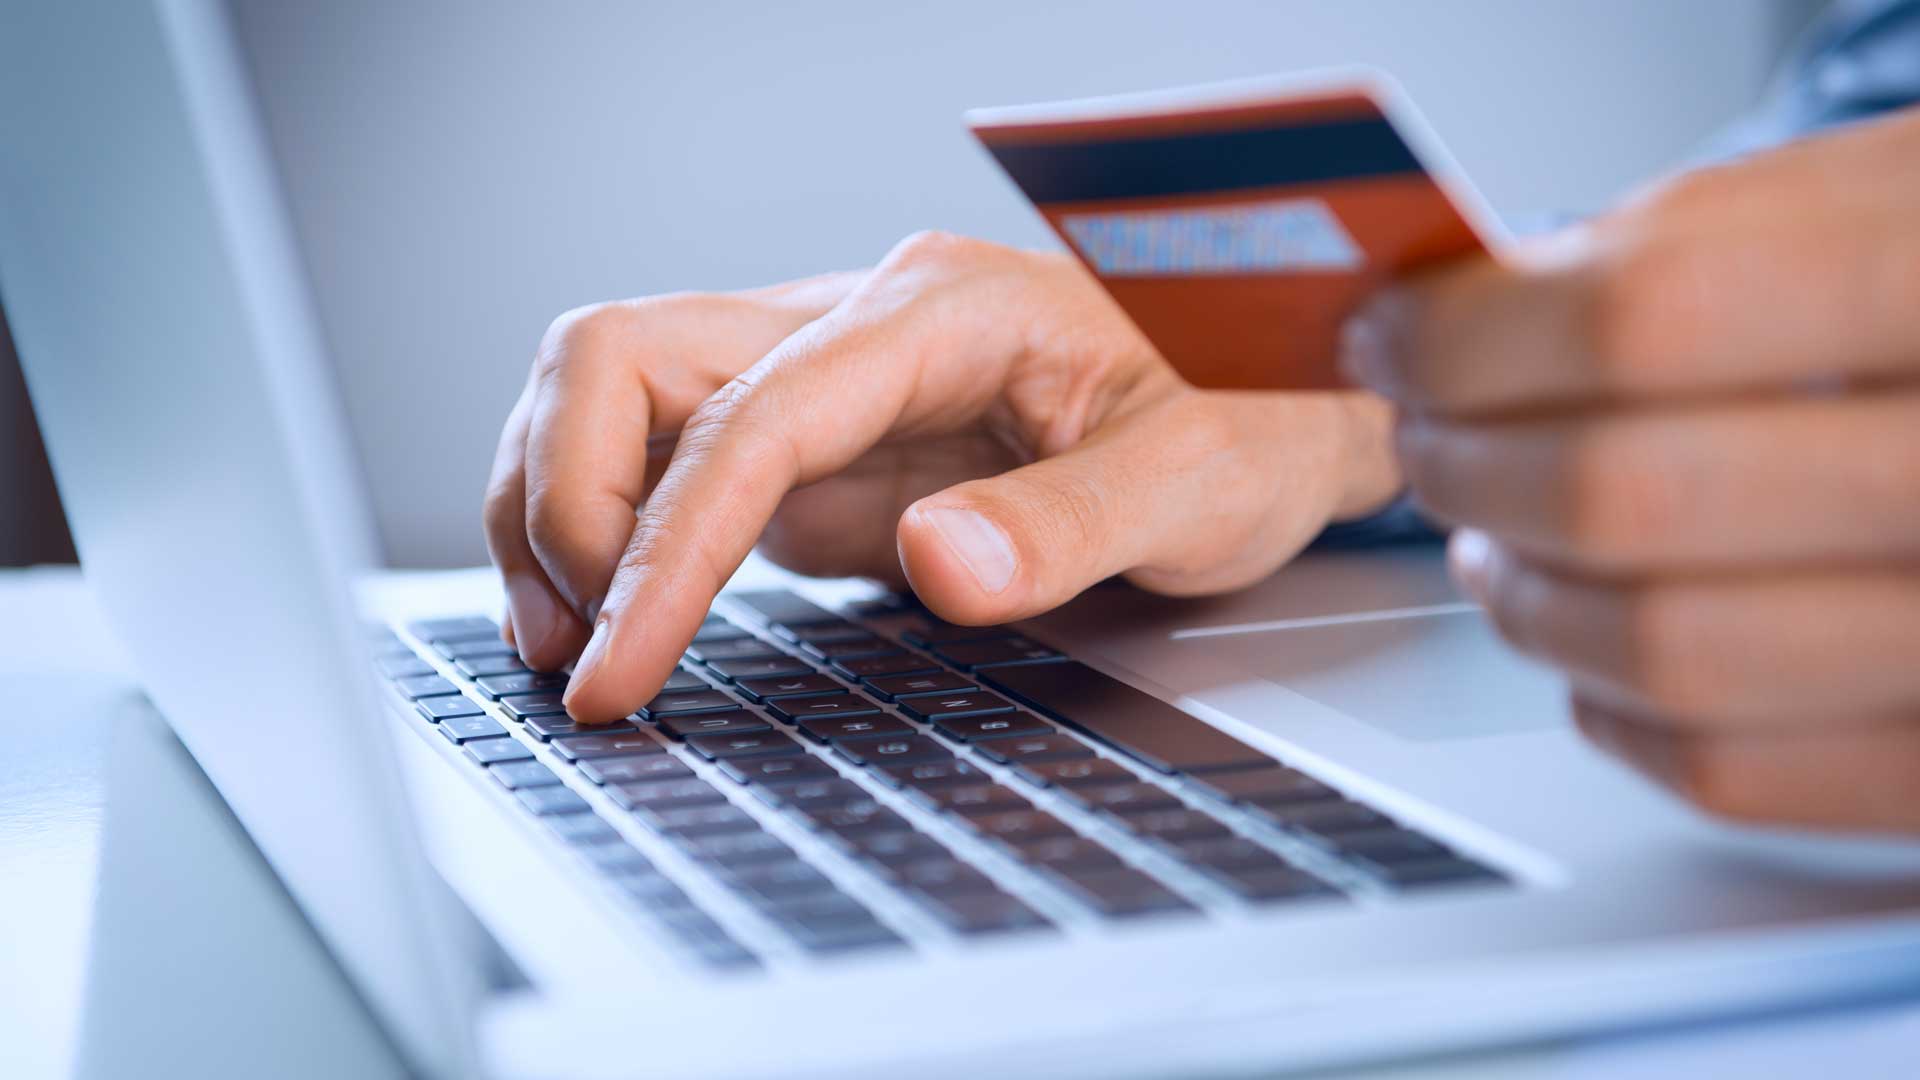 Виртуальная кредитная карта онлайн: преимущество над обычной пластиковой картой